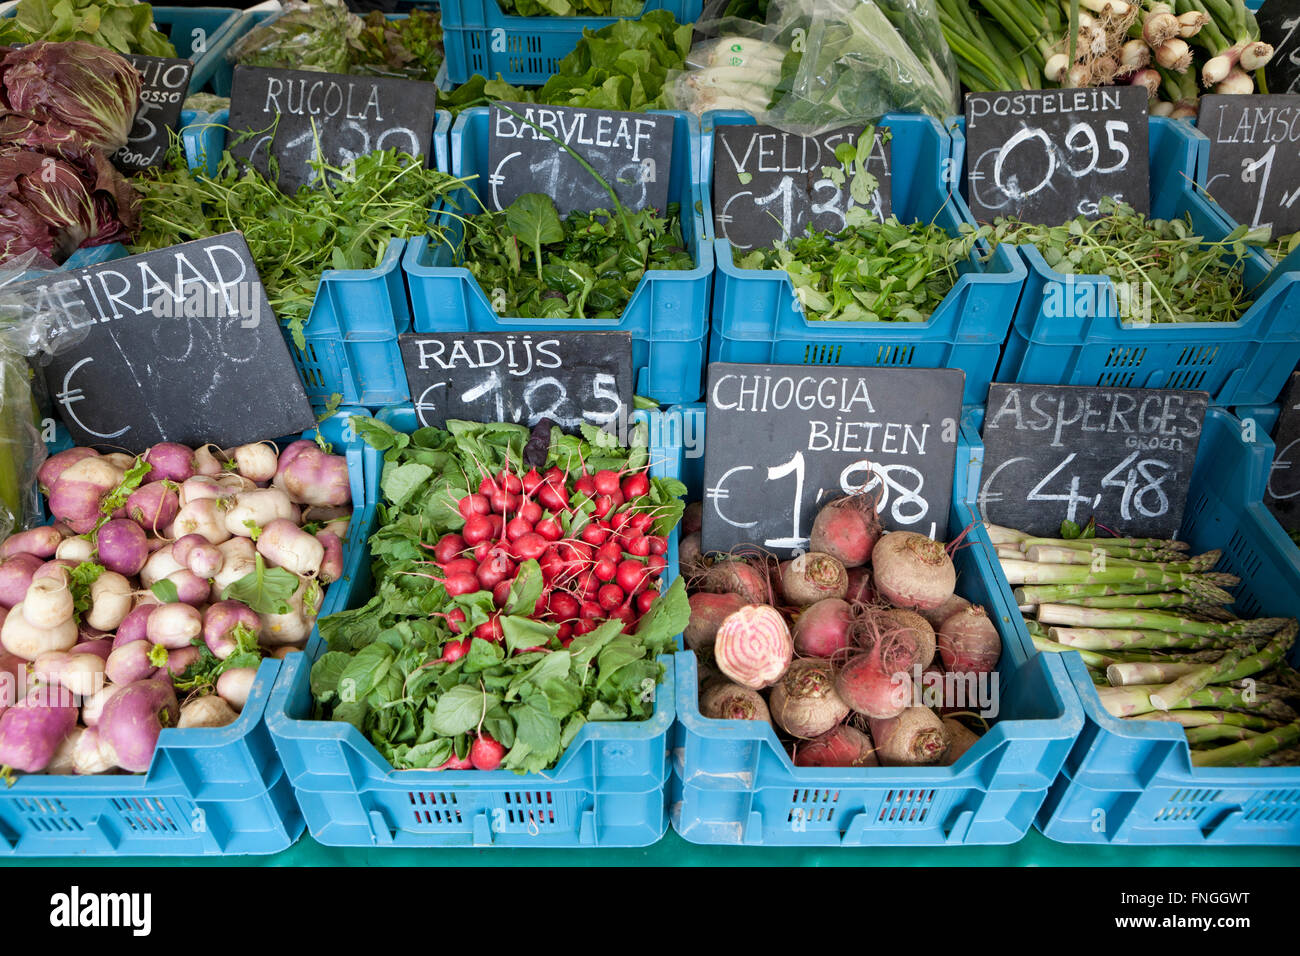 Les fruits et légumes bio sur le marché Banque D'Images